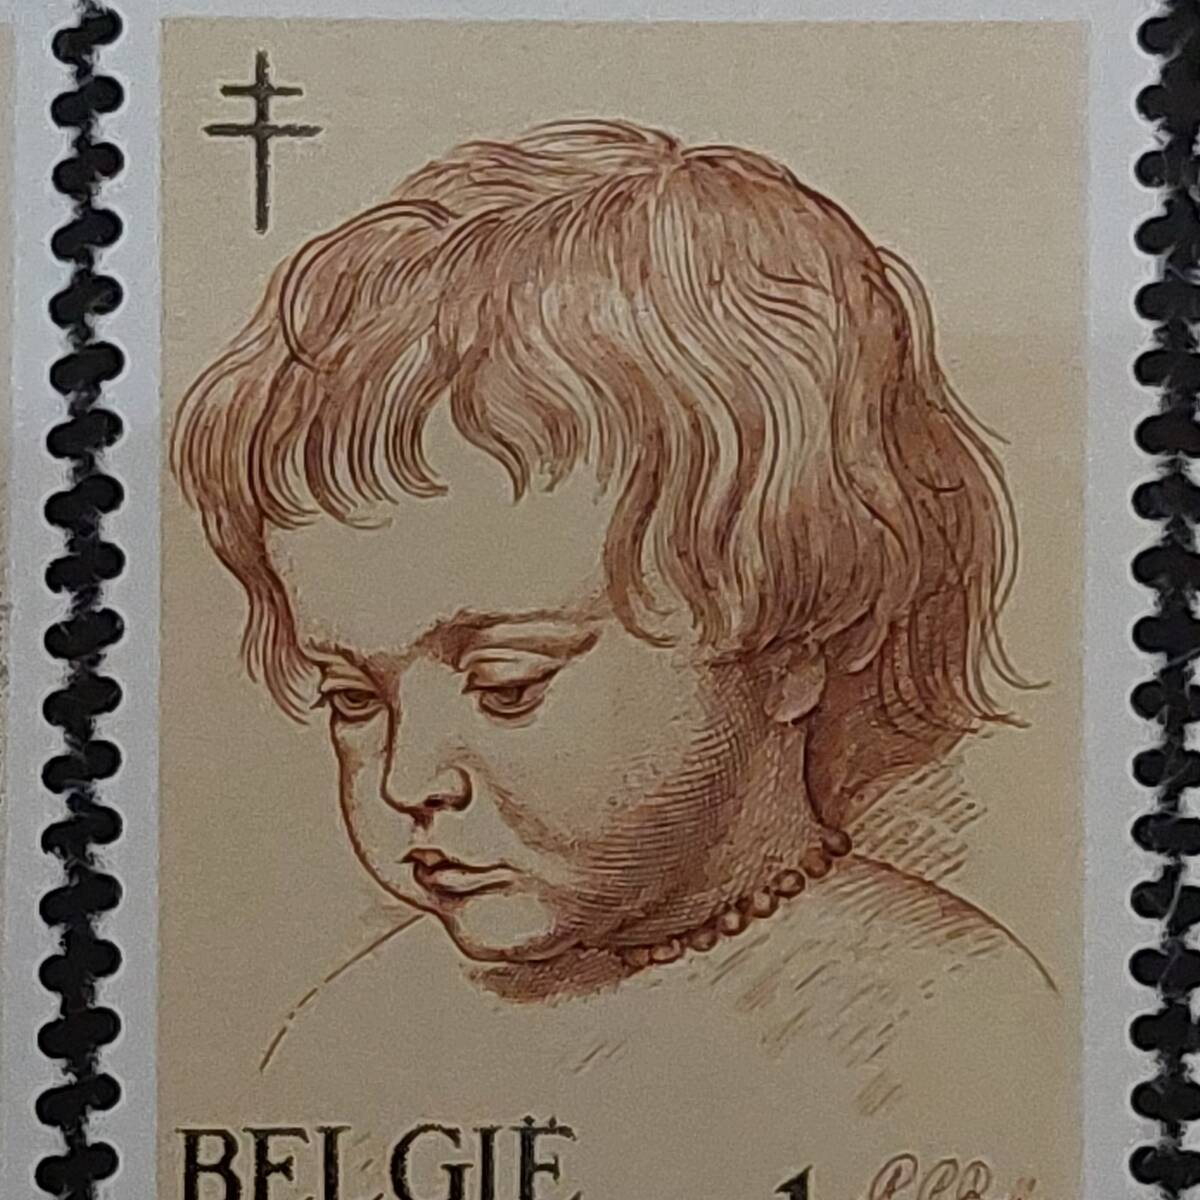 J507 ベルギー切手「バロック期のフランドルの画家『ルーベンスの子供・天使の絵画切手』(結核予防寄付金付き)6種完」1963年発行 未使用の画像3